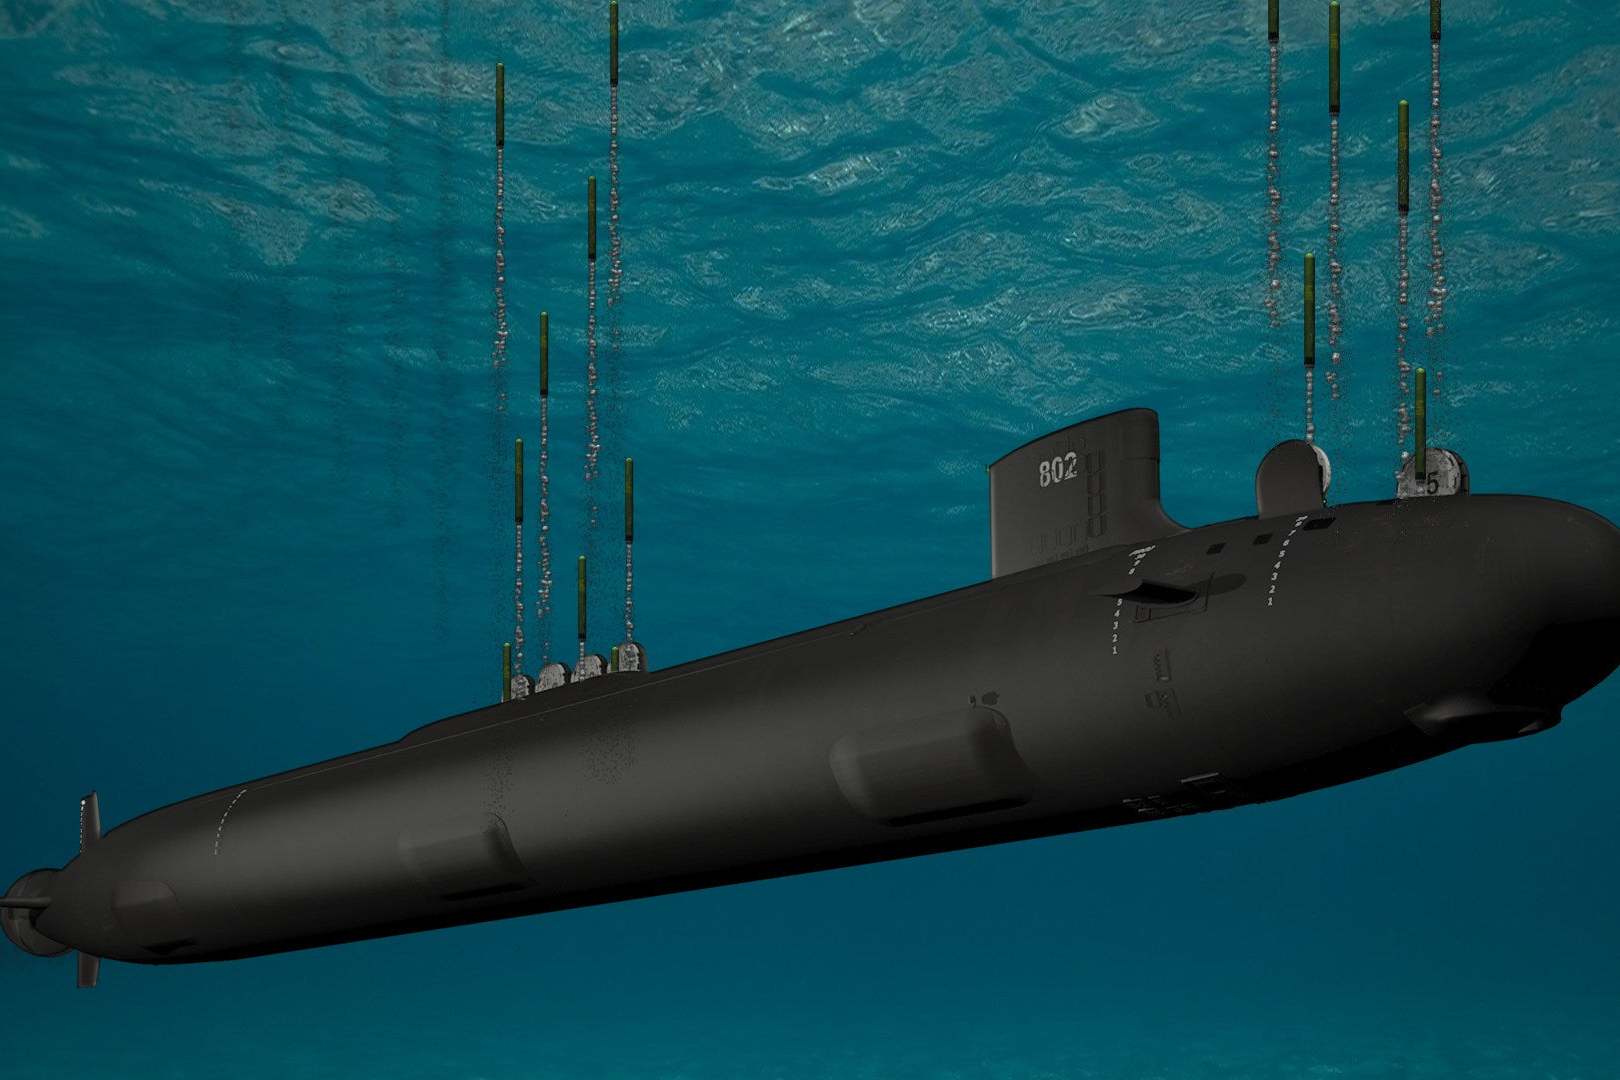 原创 潜艇克星来了!美国这招真毒,在民用船只上安装反潜声呐